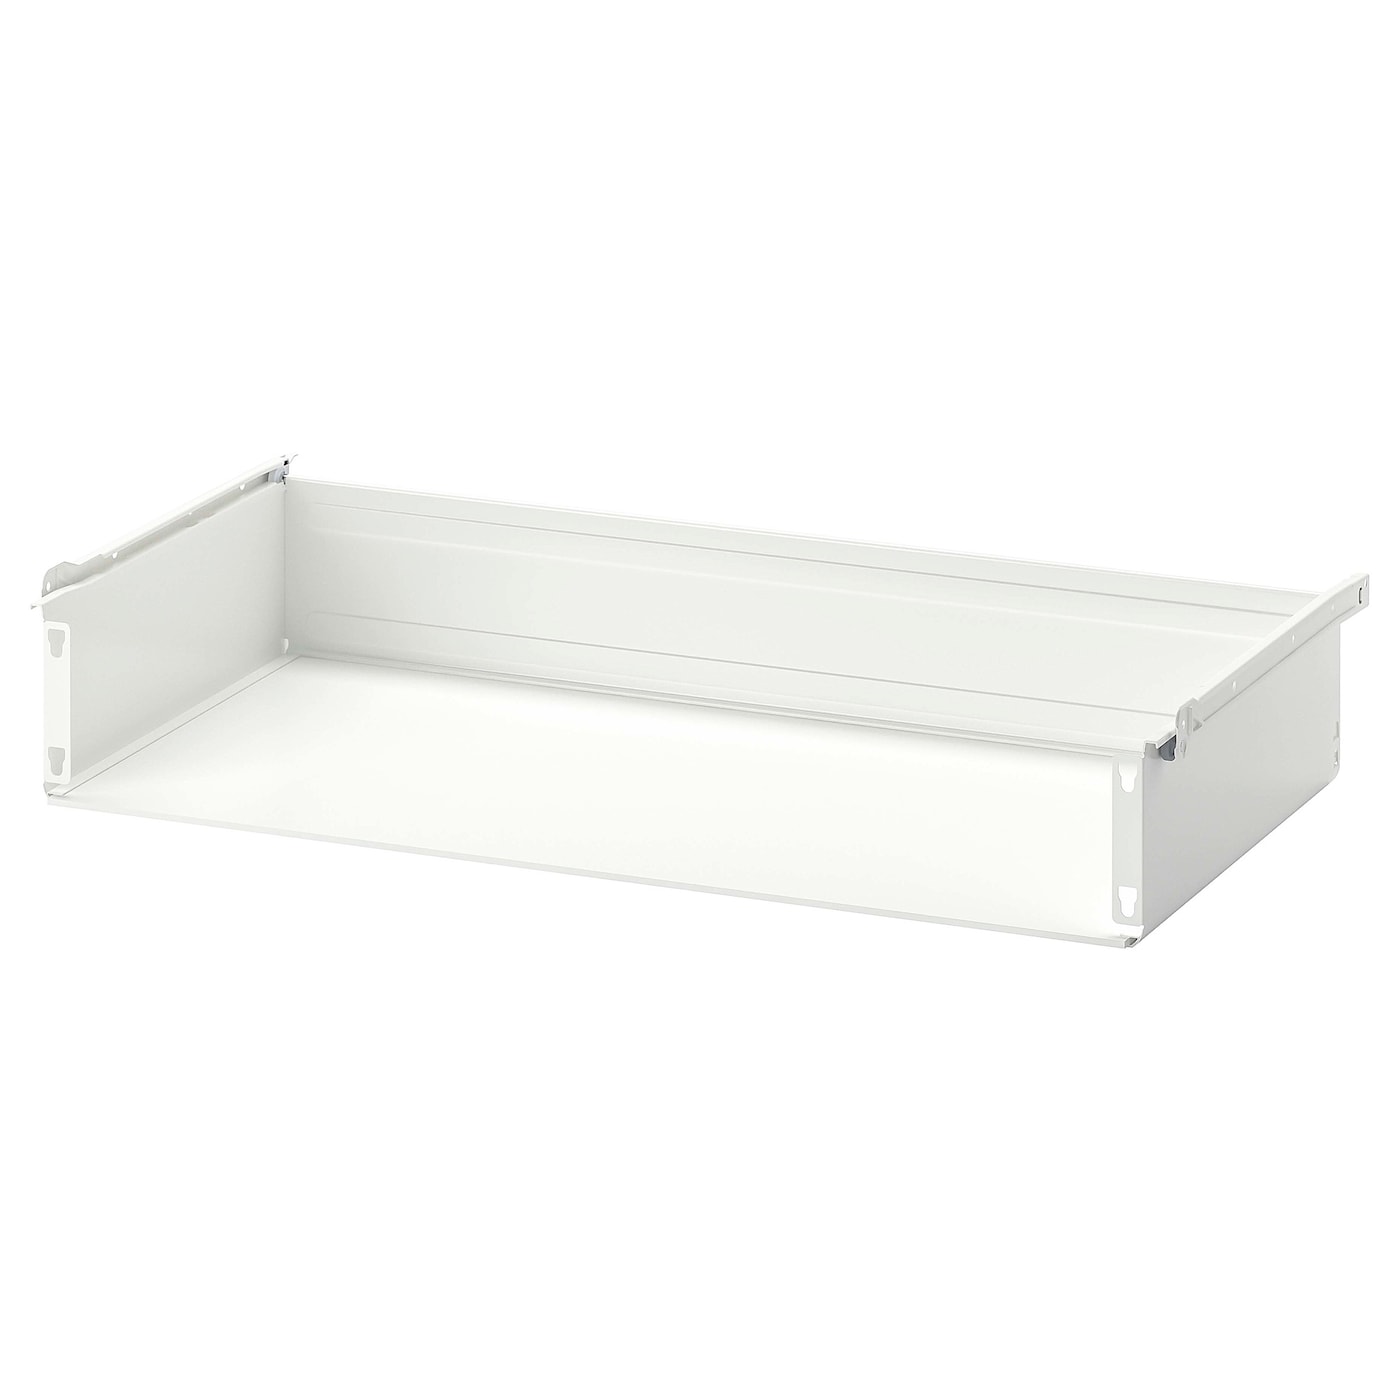 Ящик без фронтальной панели - IKEA HJALPA/HJÄLPA, 80x40 см, белый ХЭЛПА ИКЕА